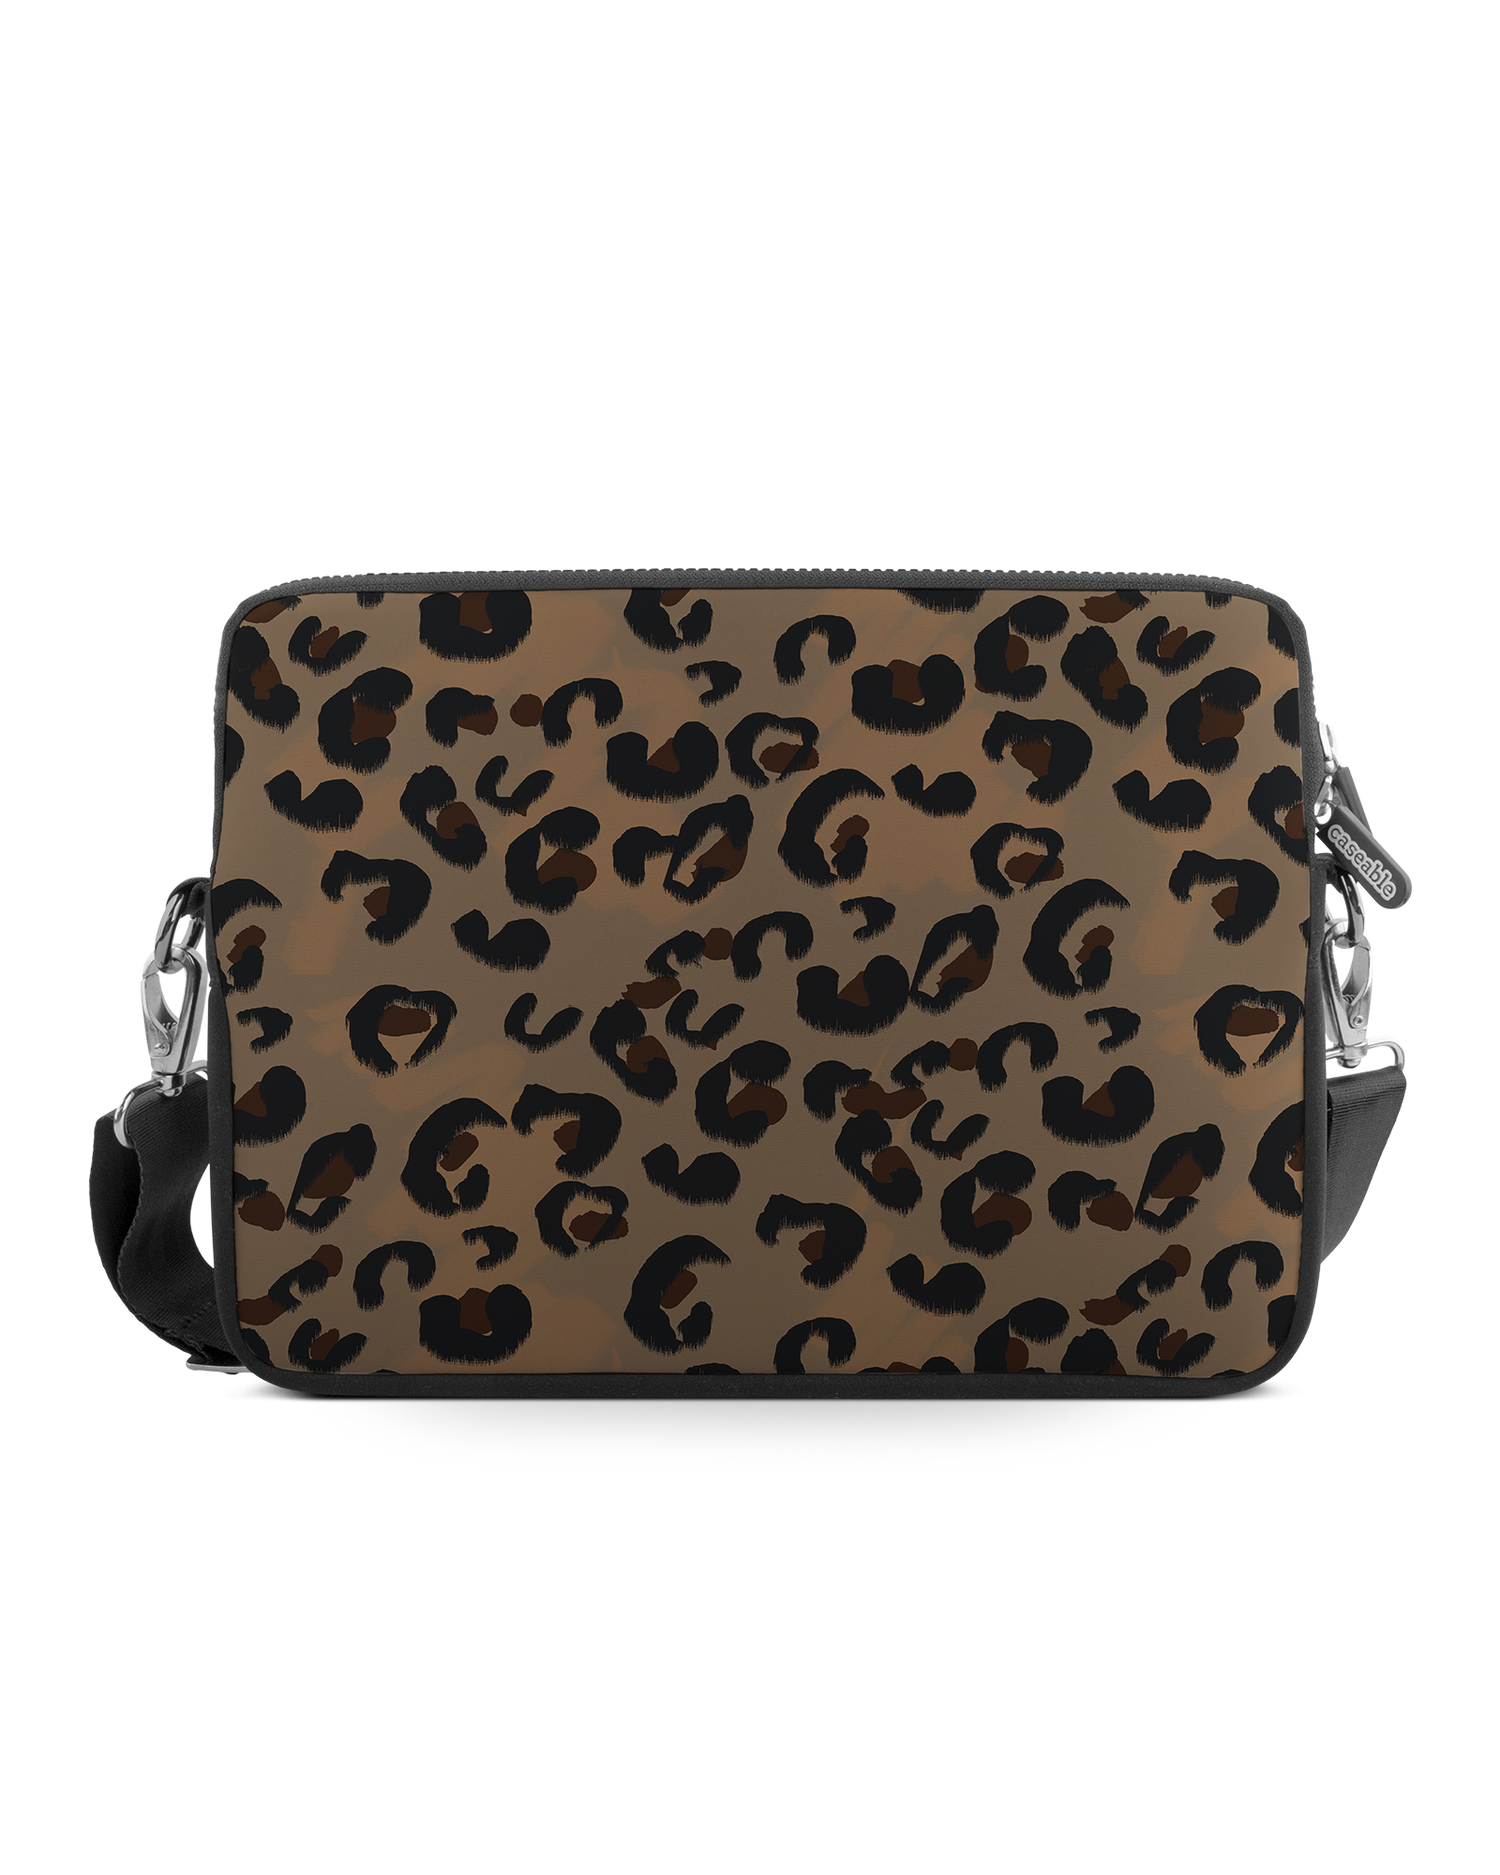 Leopard Repeat Premium Laptop Bag 17 inch: Front View